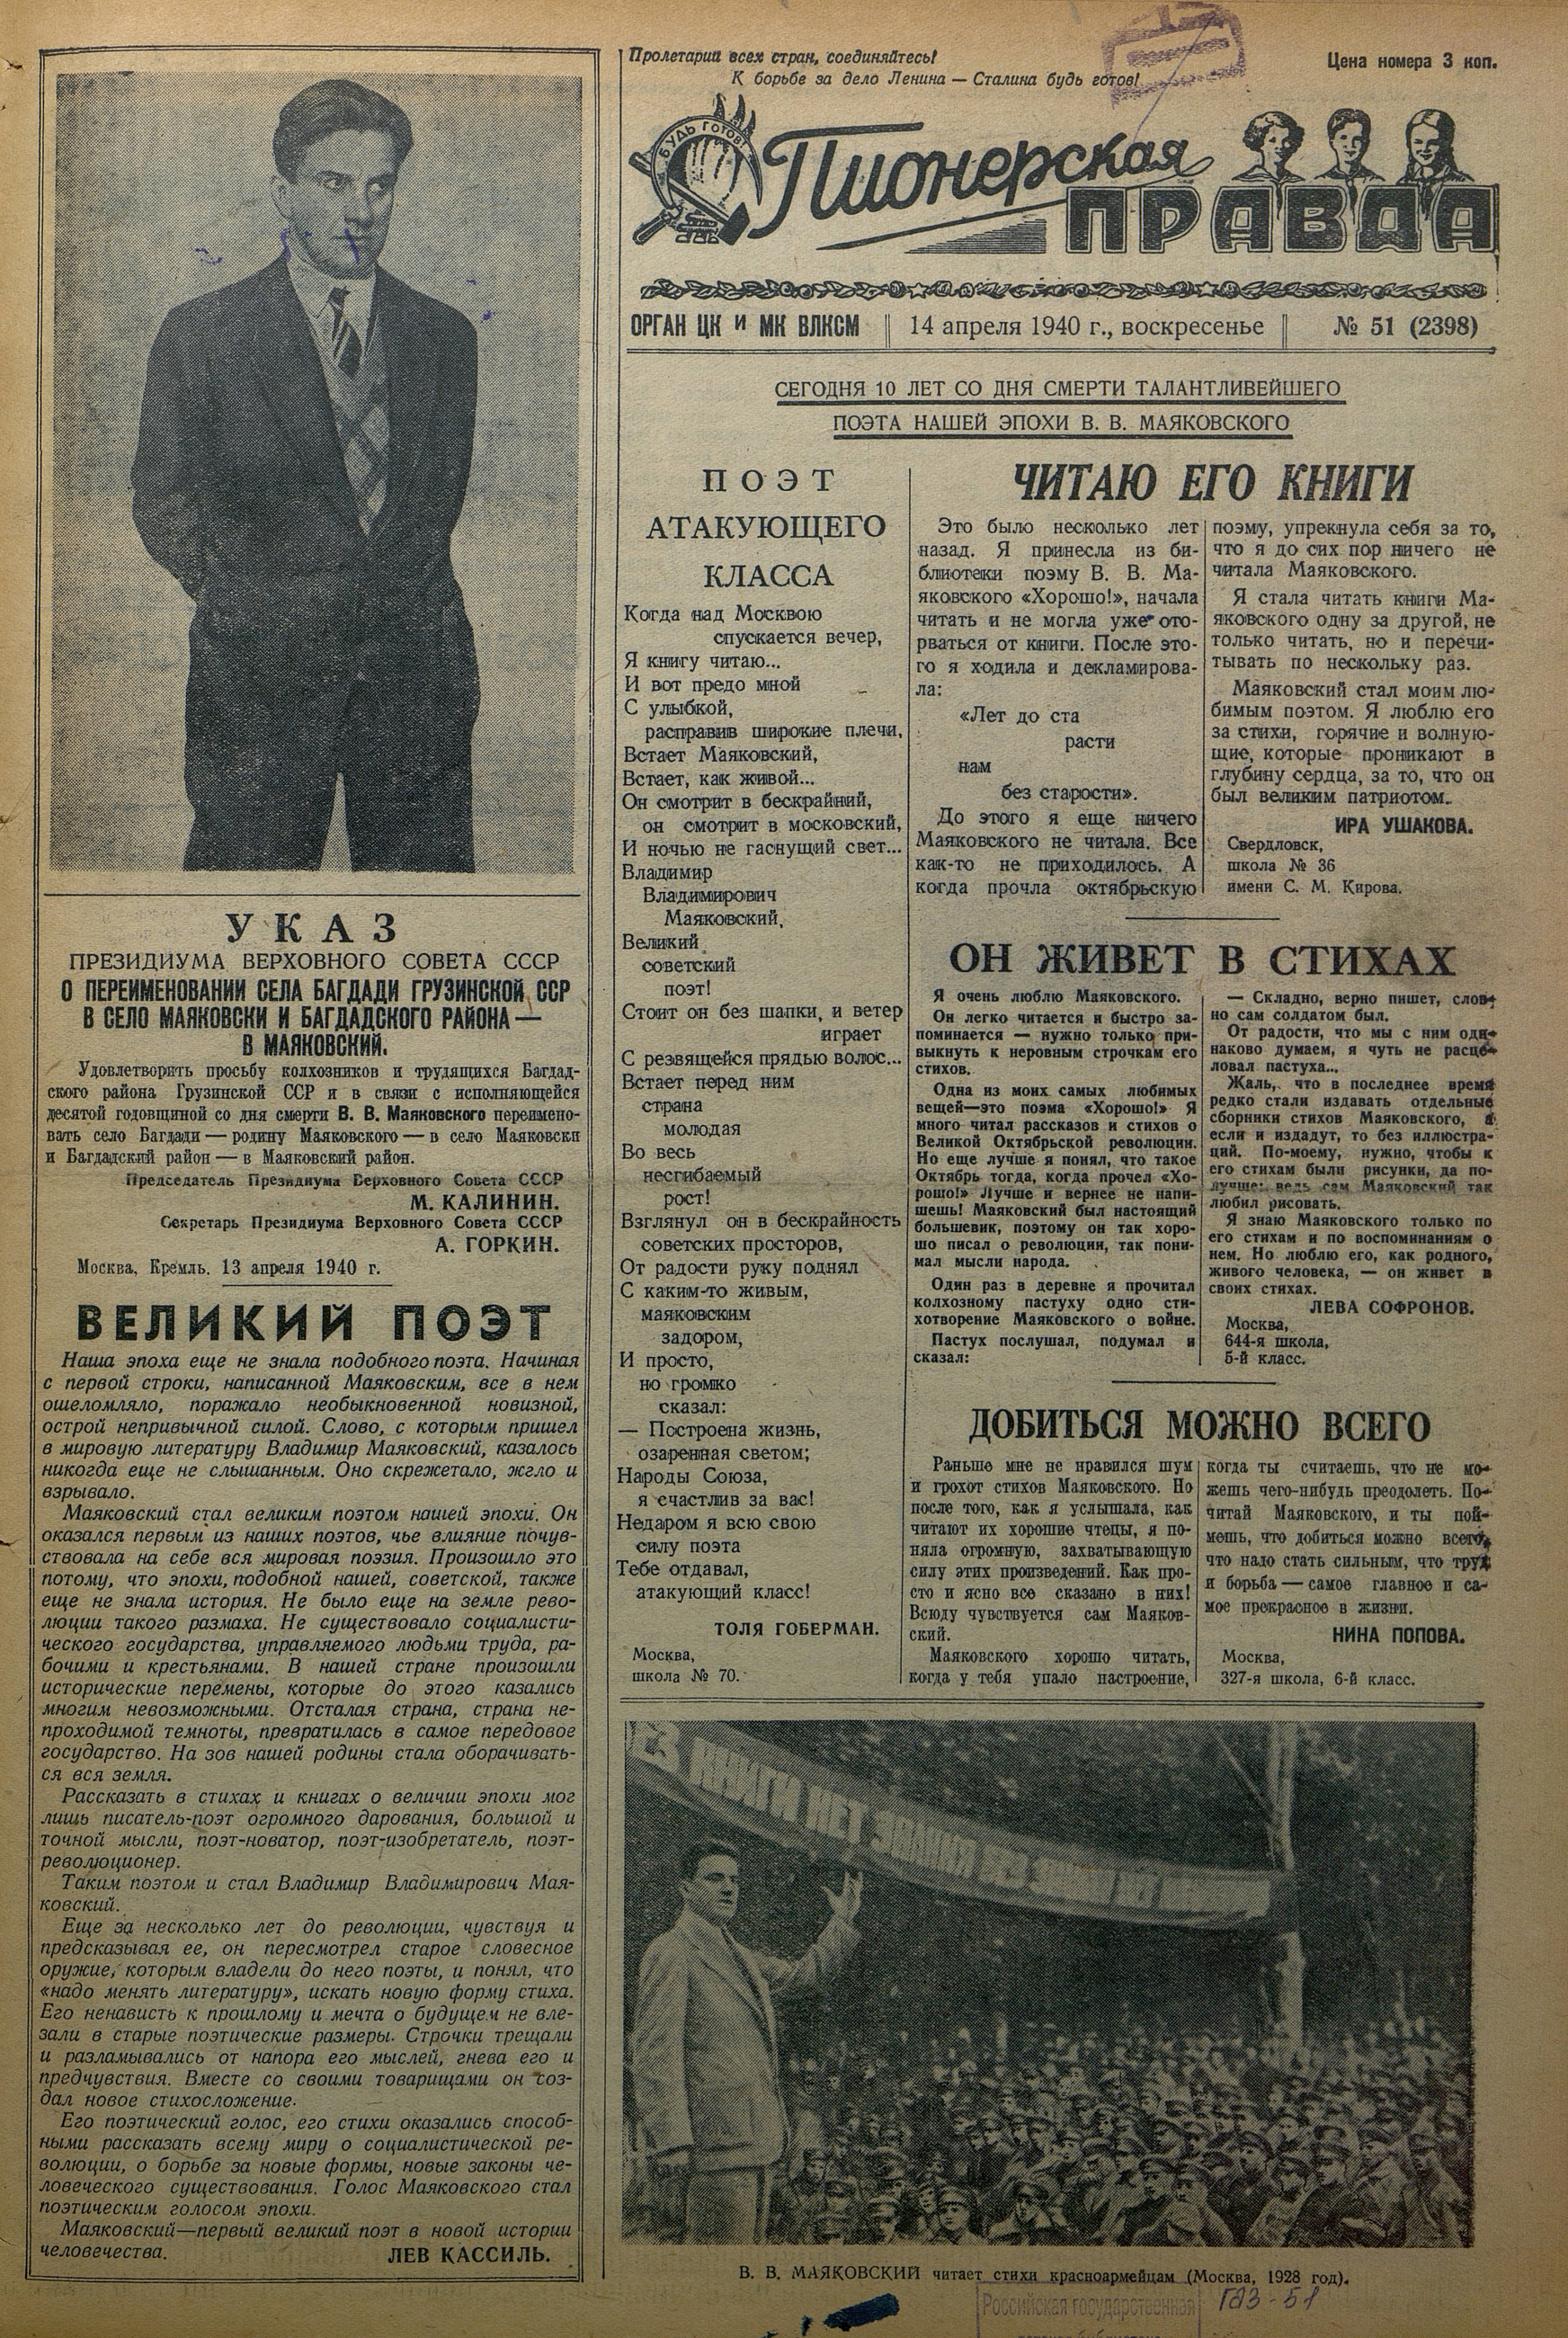 Пионерская правда. 1940. № 051 (2398): Орган ЦК и МК ВЛКСМ - 1940